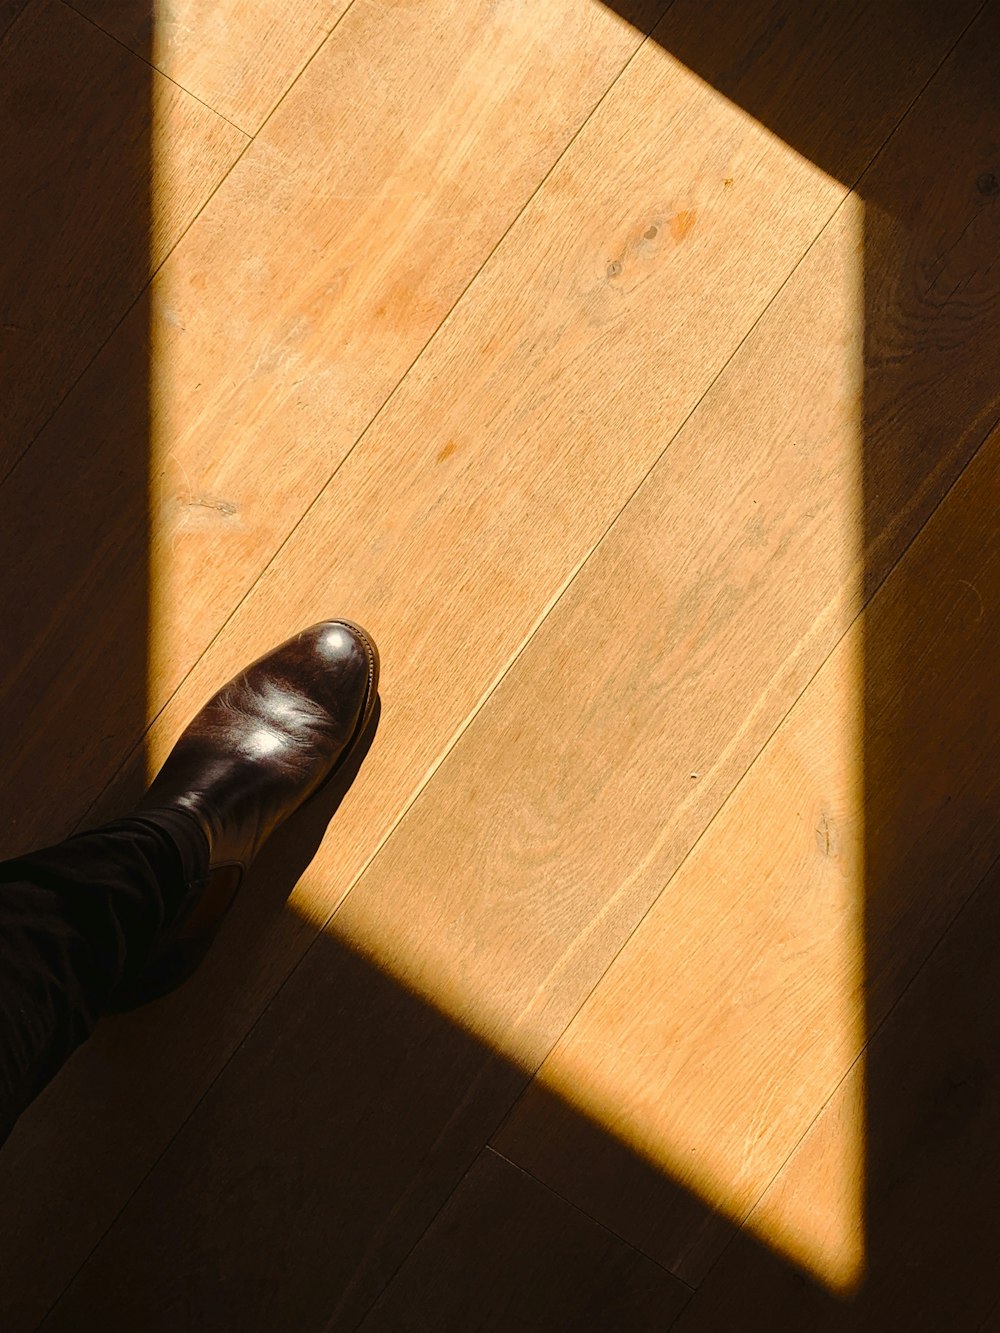 person standing on brown wooden floor